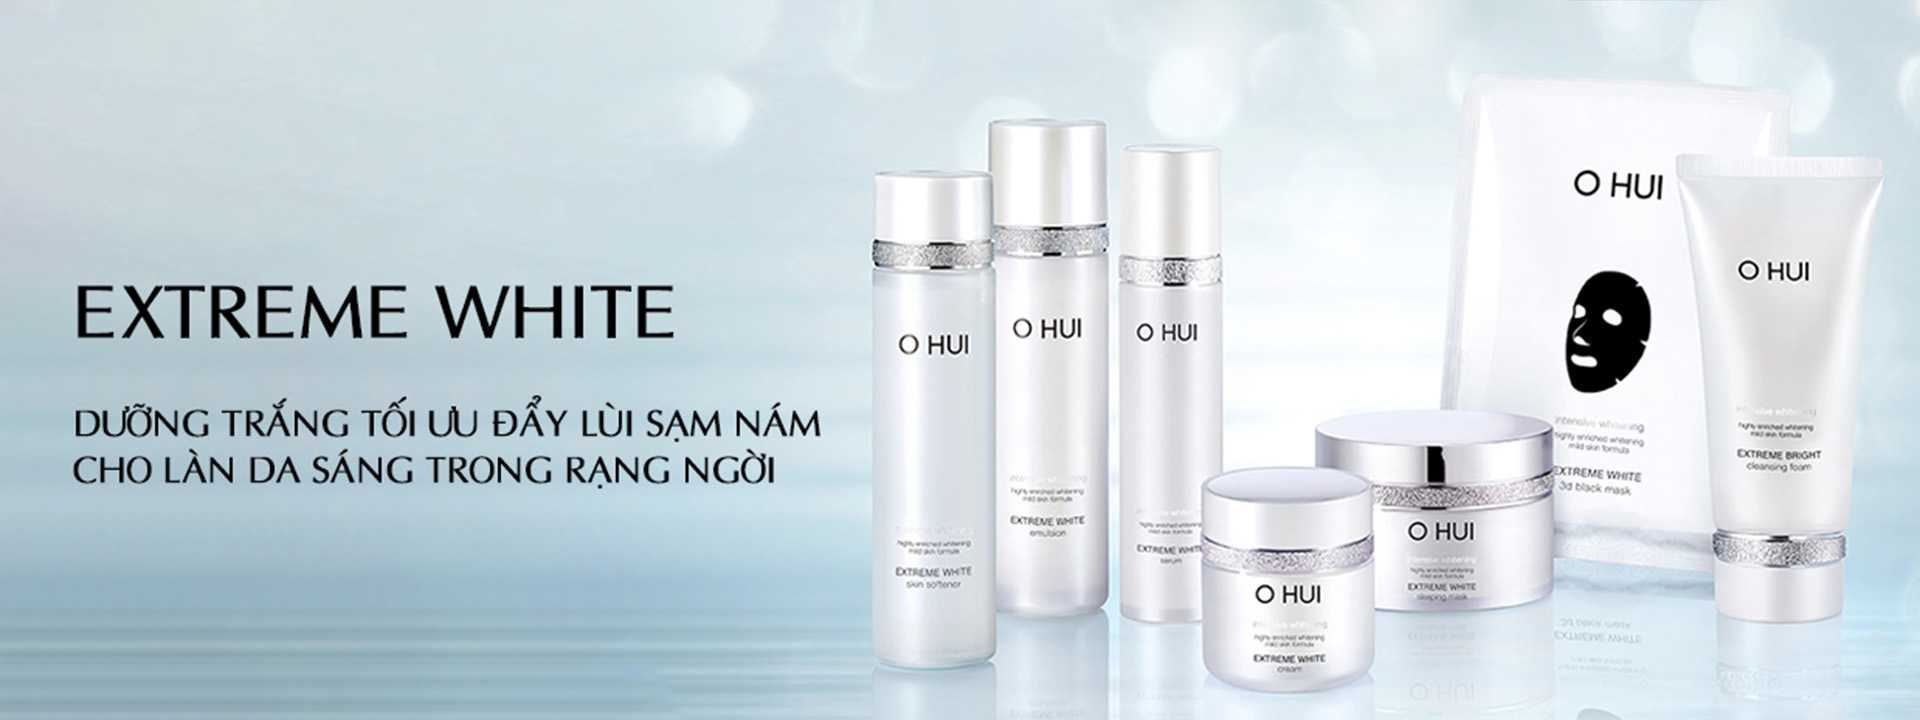 Bộ sản phẩm OHUI Extreme White – Bộ sản phẩm OHUI trắng dưỡng sáng da, đẩy lùi sạm nám